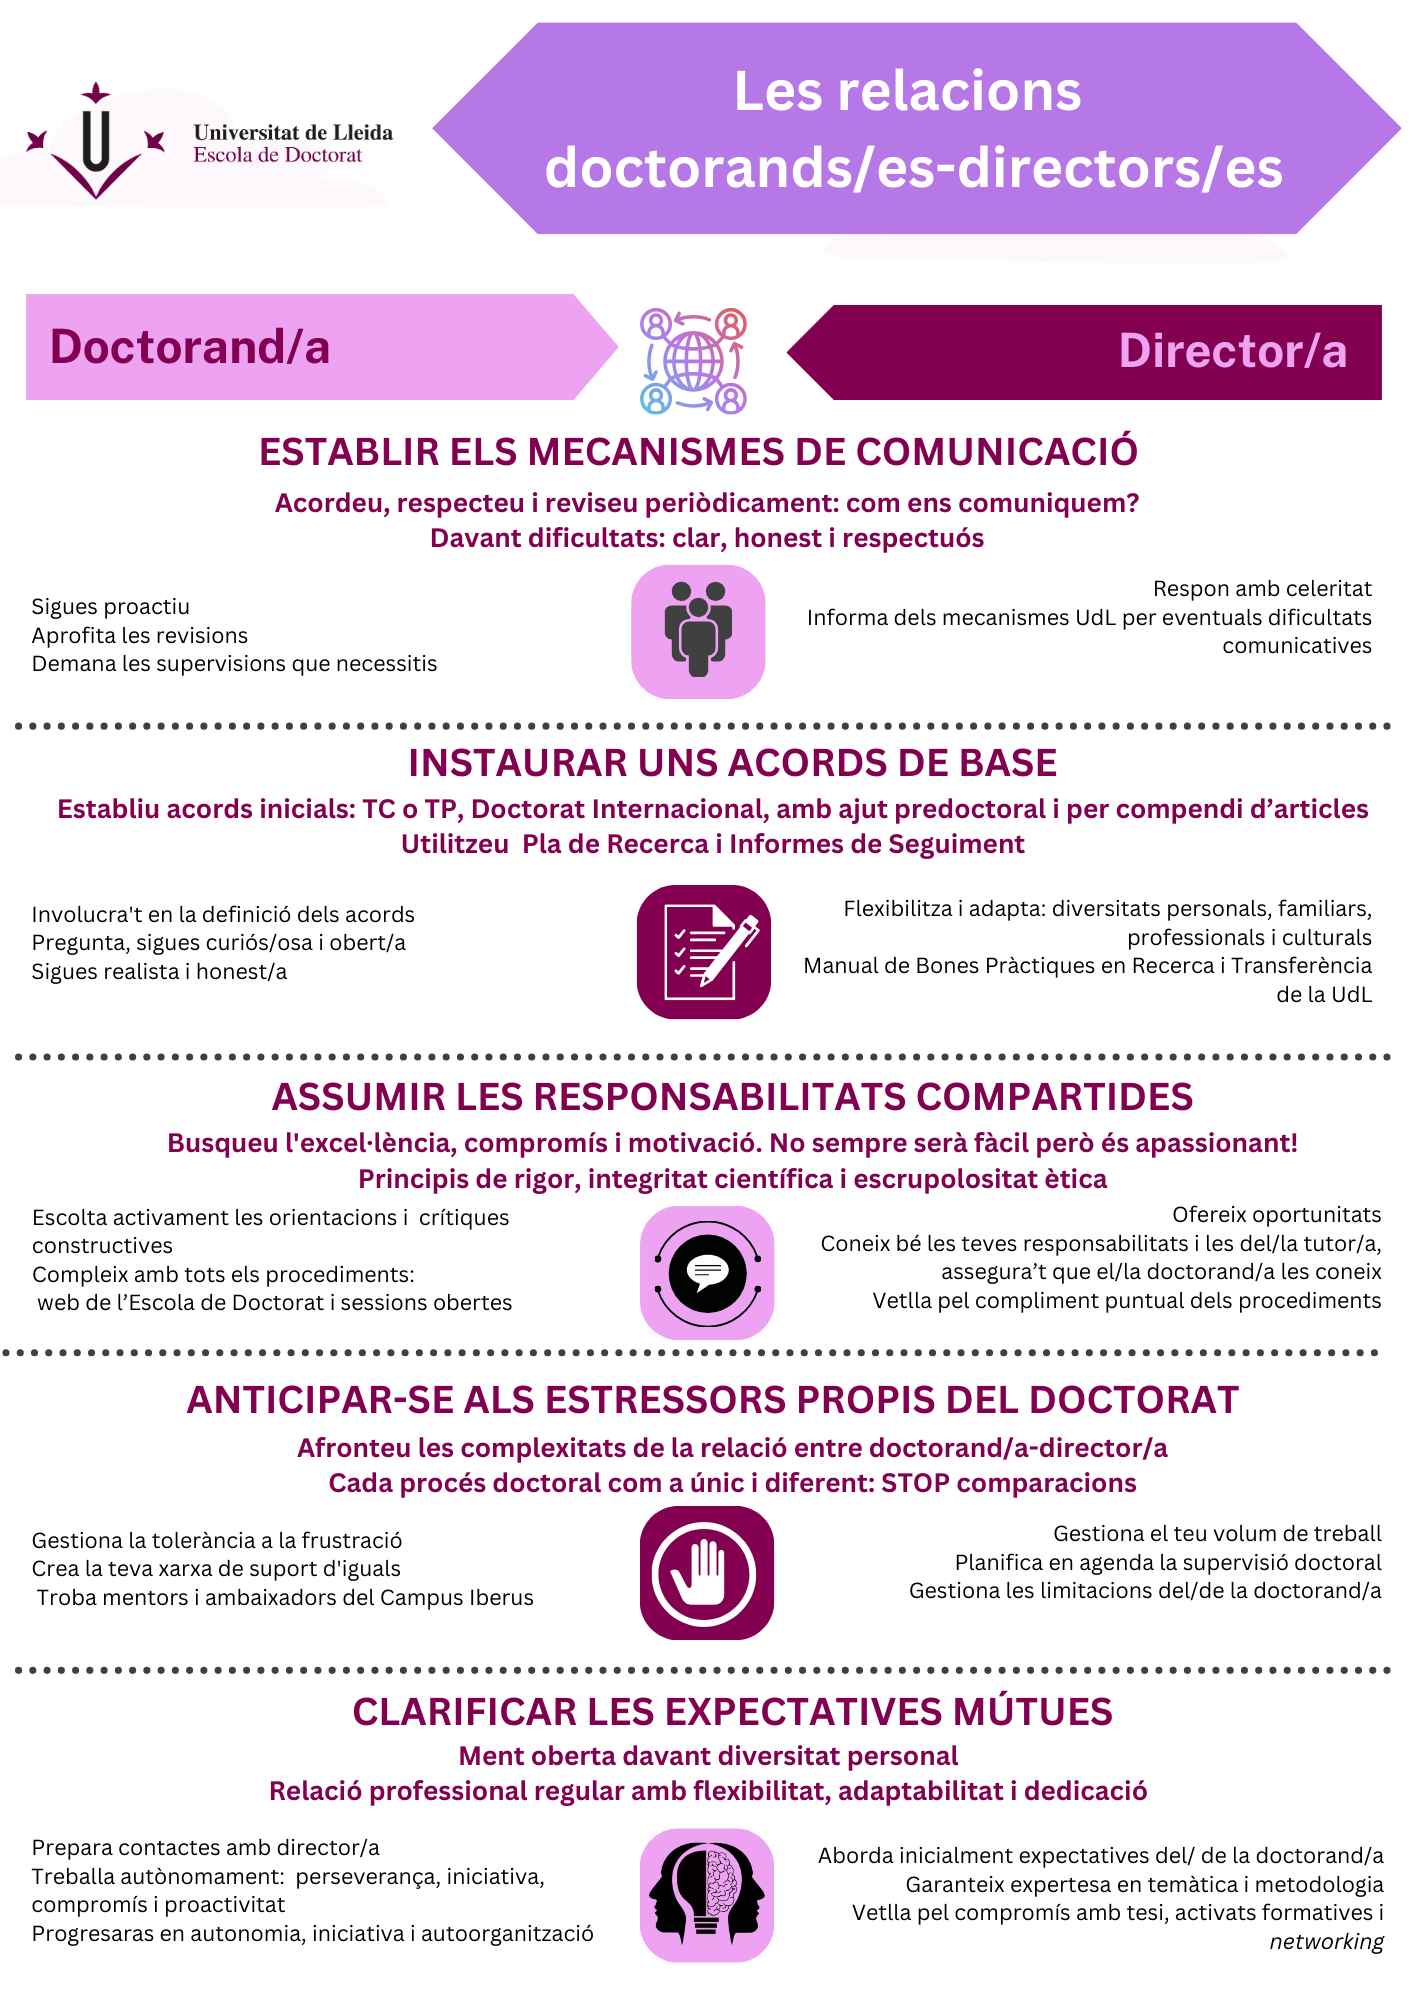 INFOGRAFIA Les relacions doctorands/es-directors/es